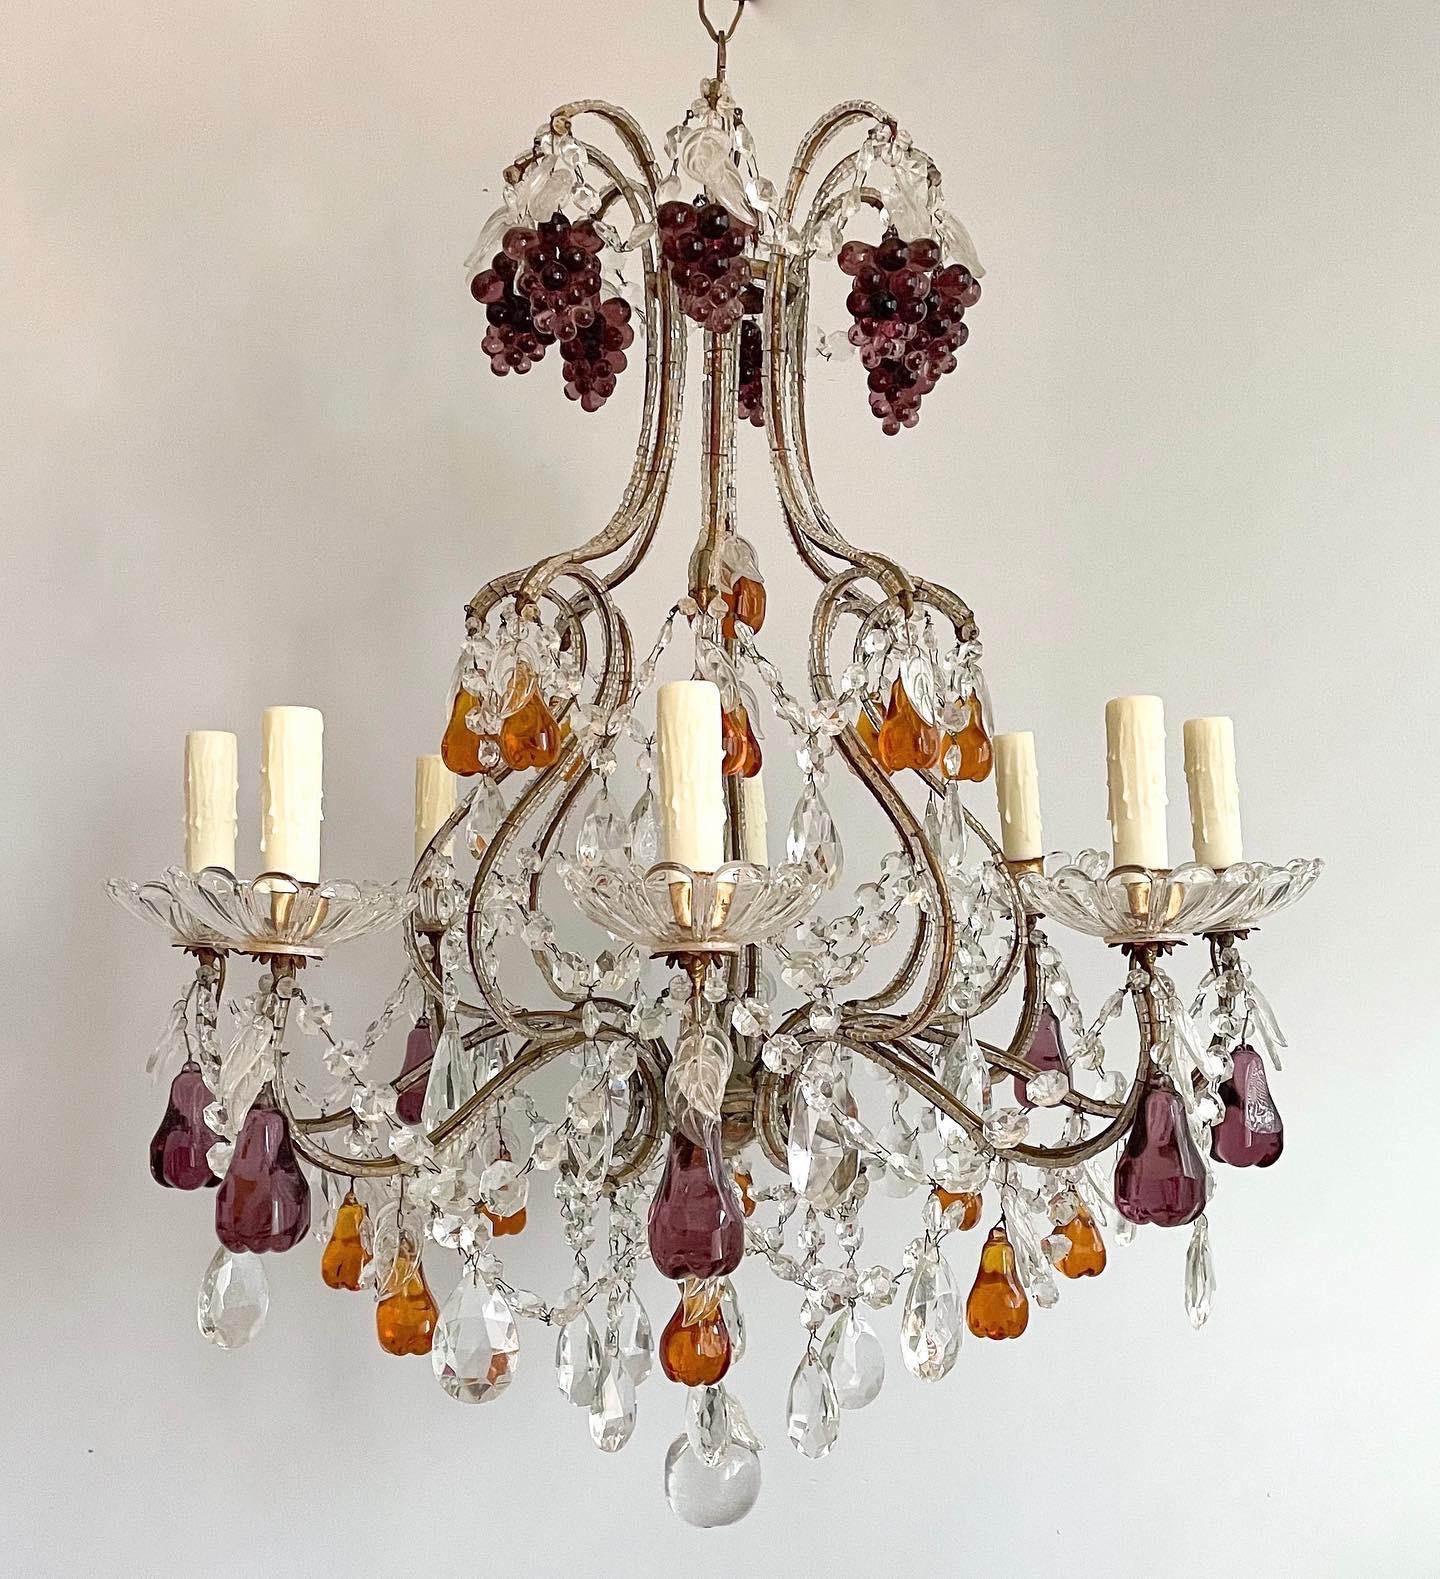 Fabuleux lustre italien des années 1950 en fer doré et cristal avec décorations de fruits en verre de Murano.

 Le lustre se compose d'un cadre en fer doré à volutes gracieuses et d'un assortiment de fruits en verre comprenant des grappes de